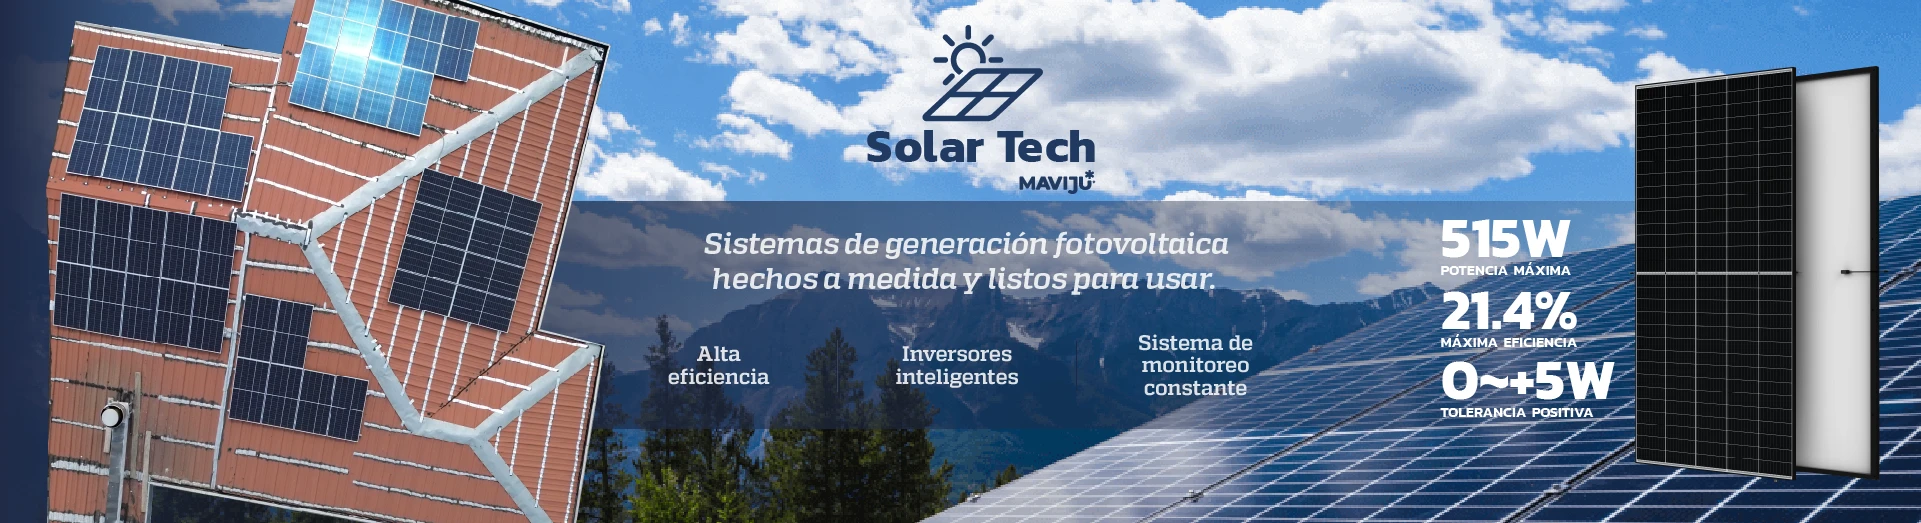 Solar Tech Maviju, soluciones solares